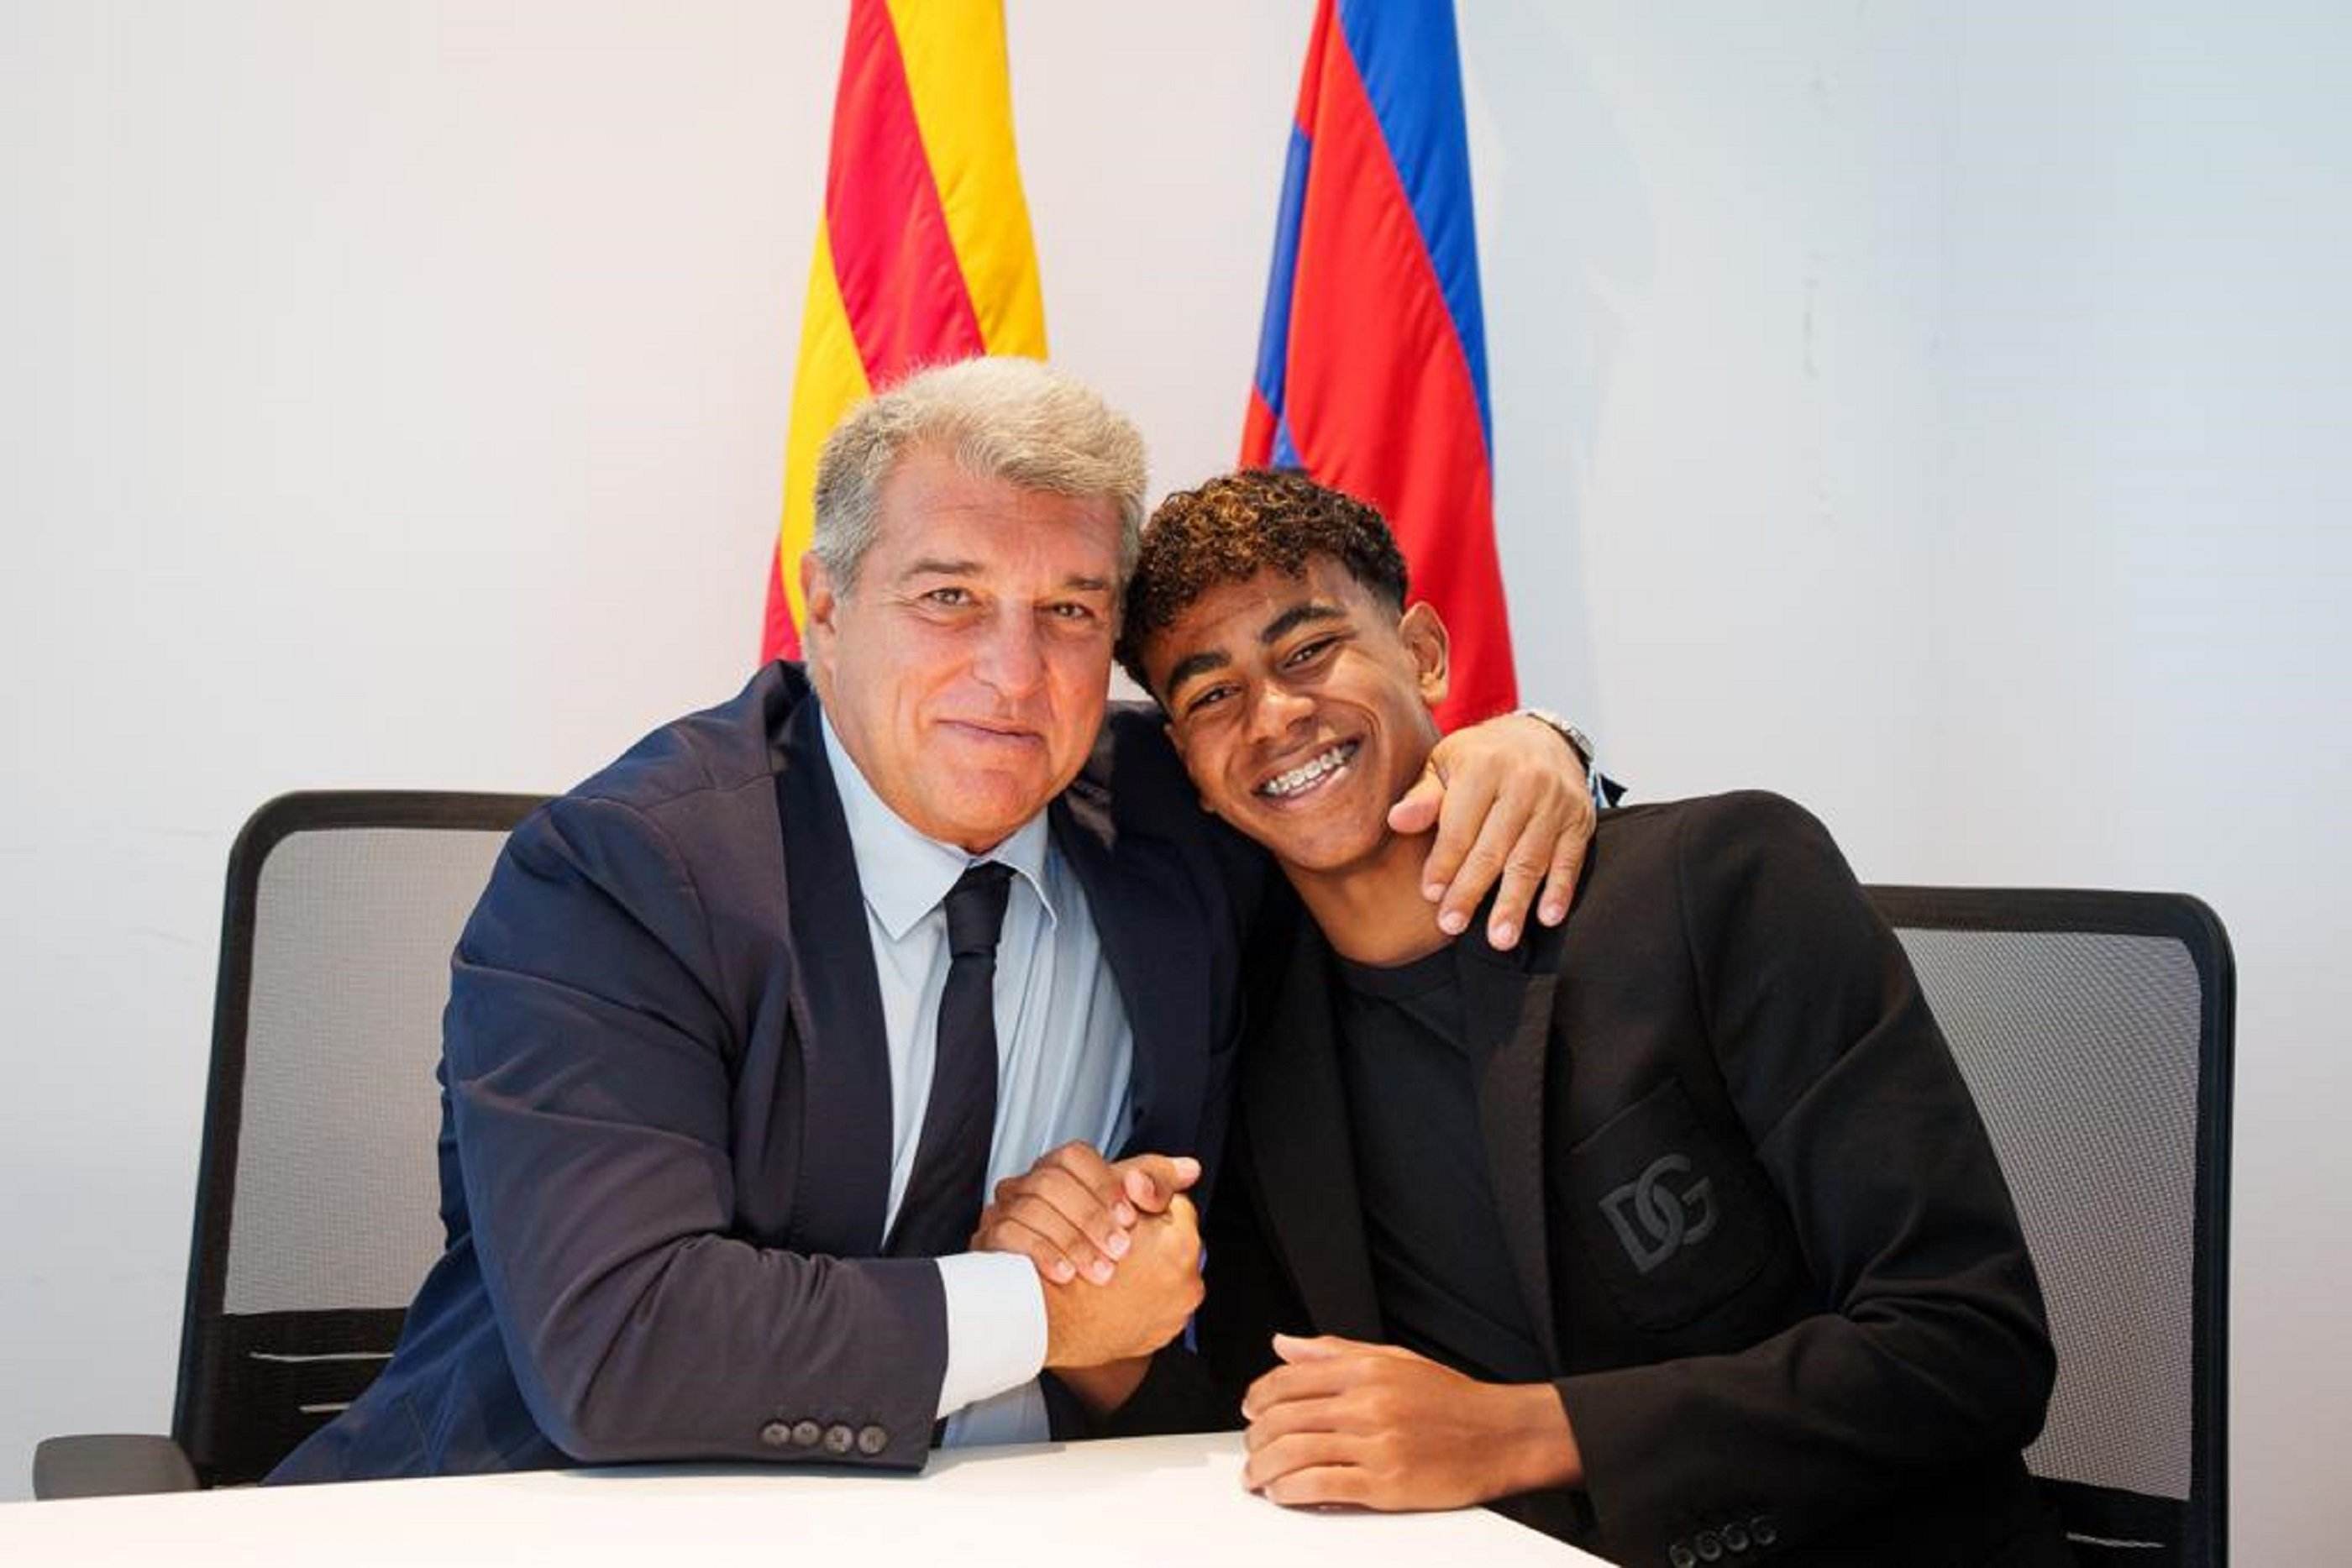 El Barça lliga el futur: Lamine Yamal, renovat fins al 2026